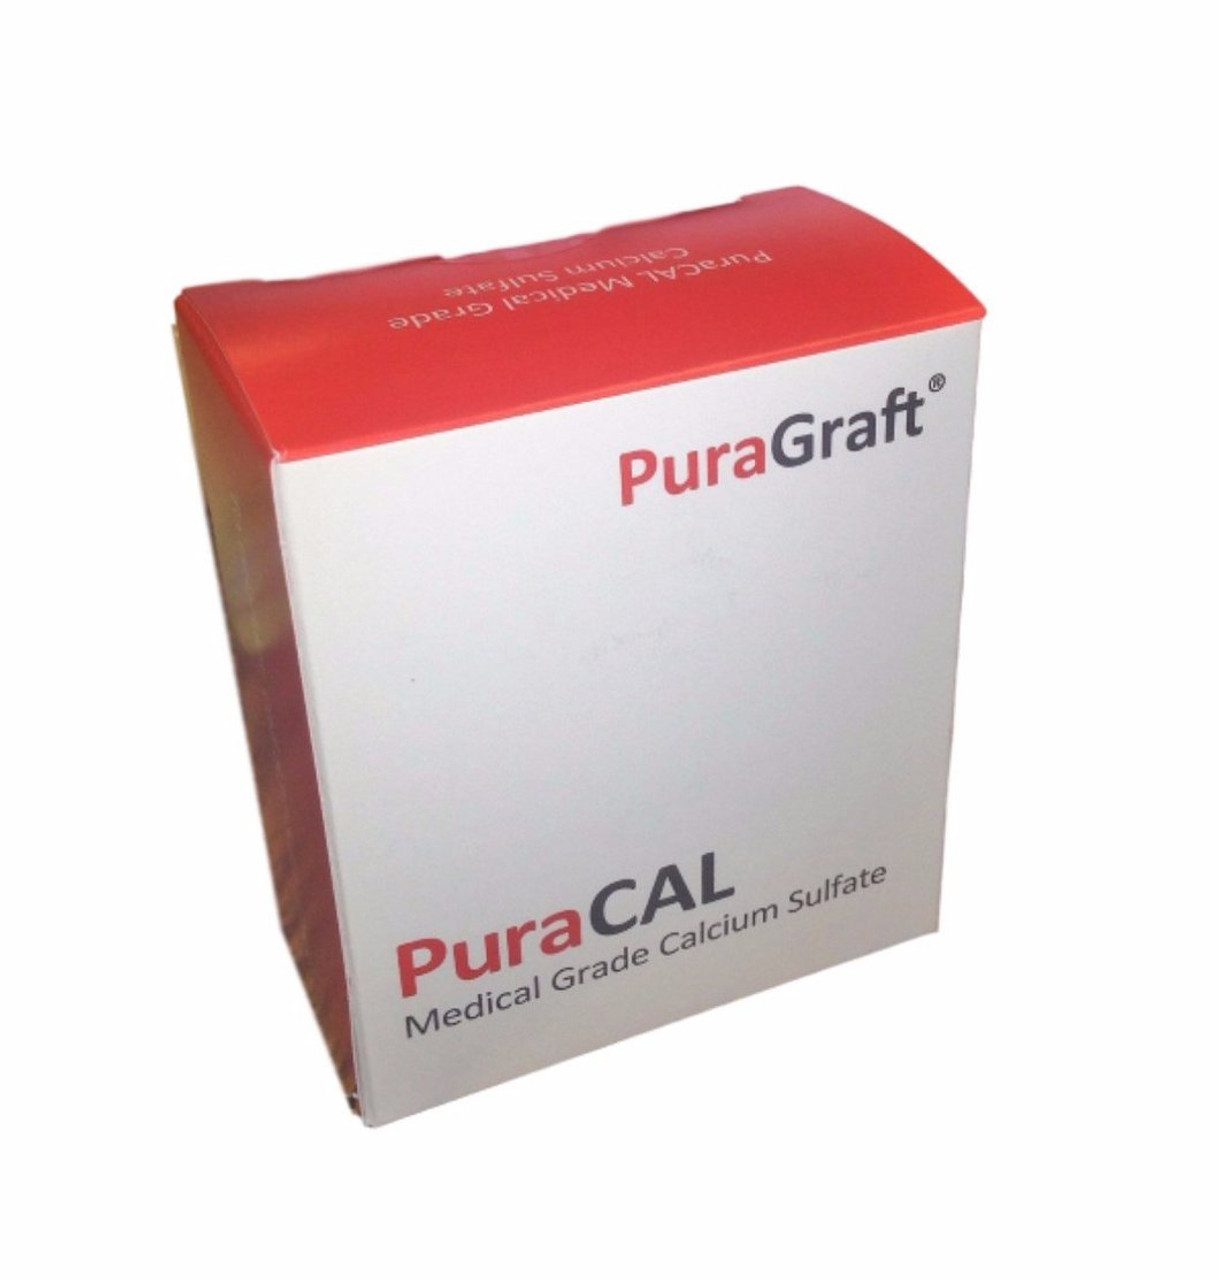 Puragraft PuraCAL Calcium Sulf Synthetic Grafting Material 1.0 Gram ea